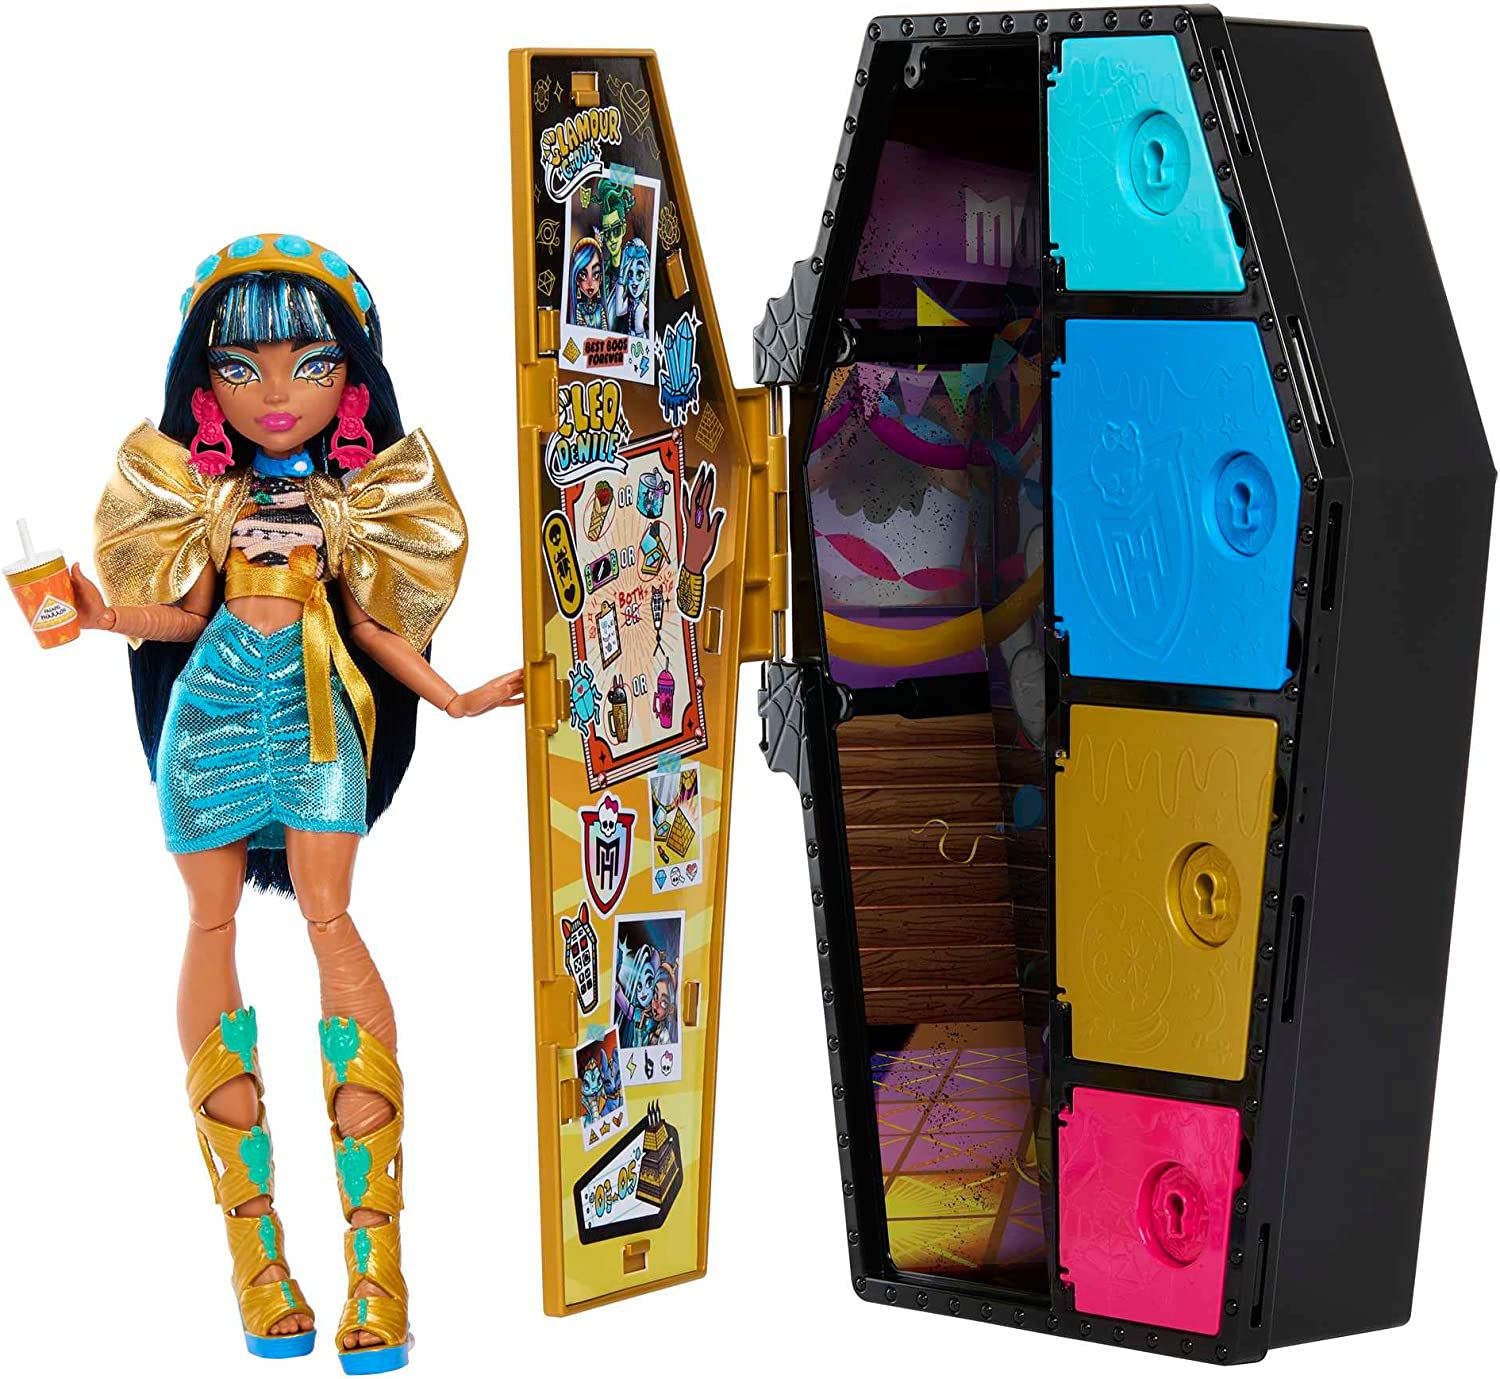 Monster High Boneca Dança dos Monstros Lagoona - Mattel